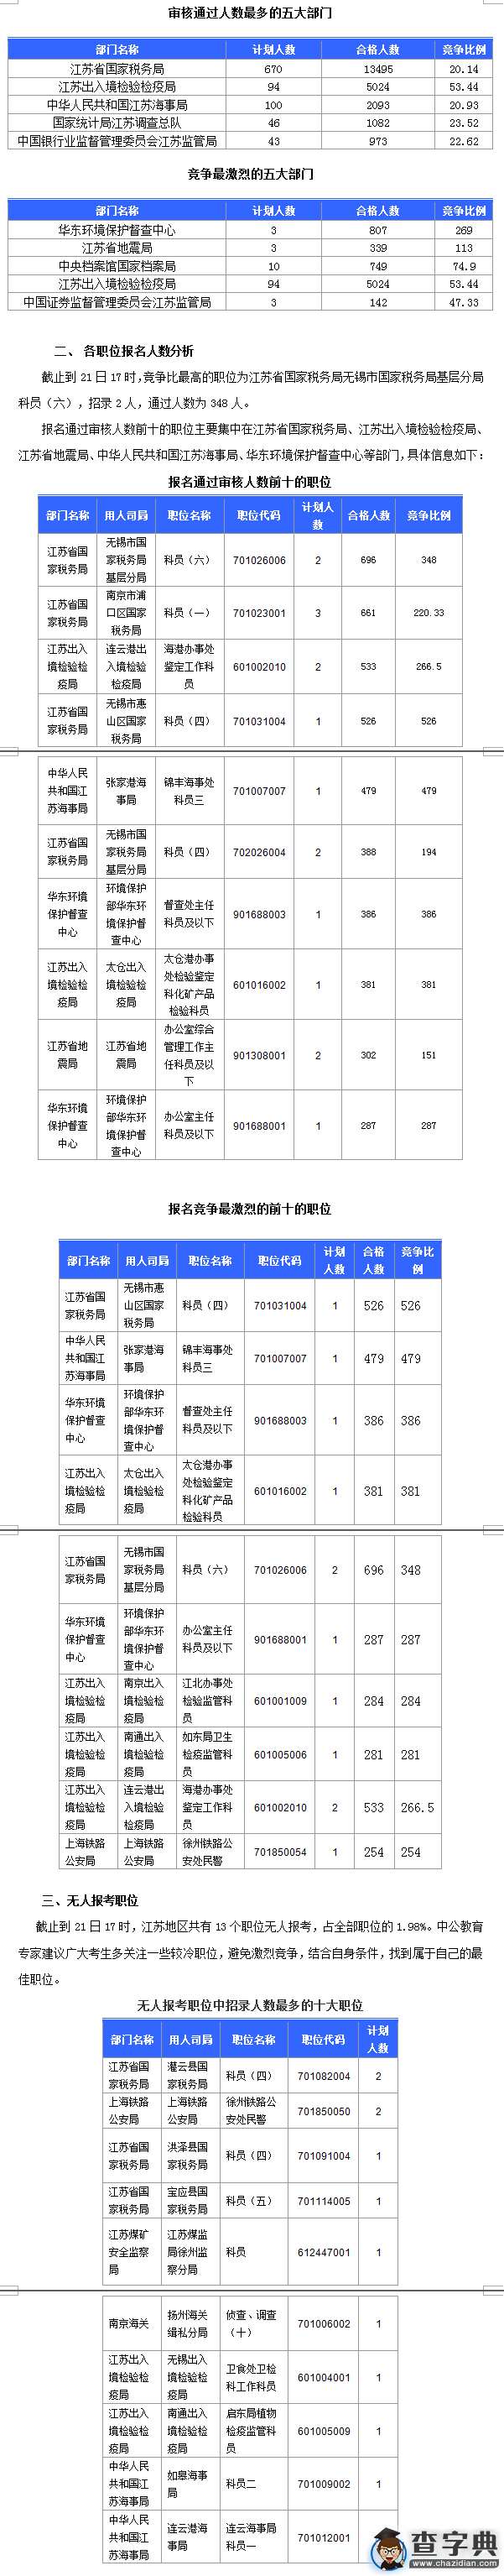 2016国考江苏审核人数达26240人 最热职位比526：11